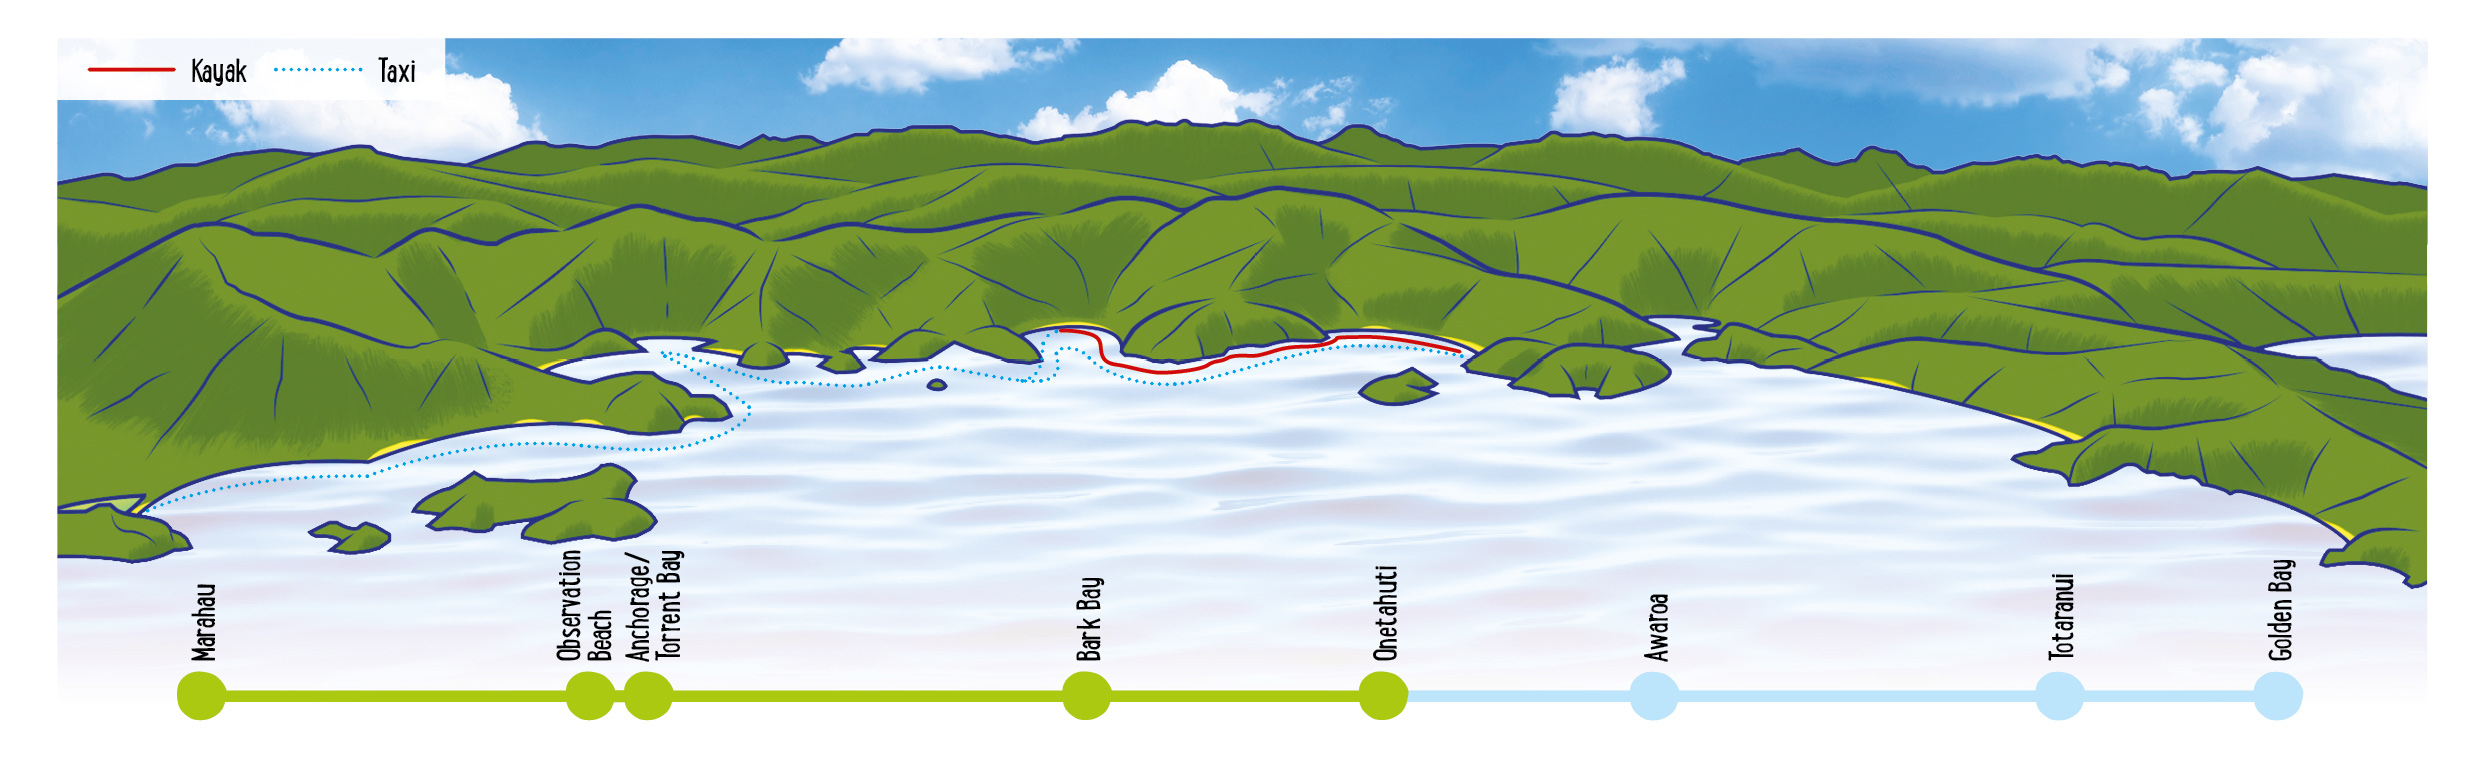 Seal Sanctuary Map - Abel Tasman Kayaks